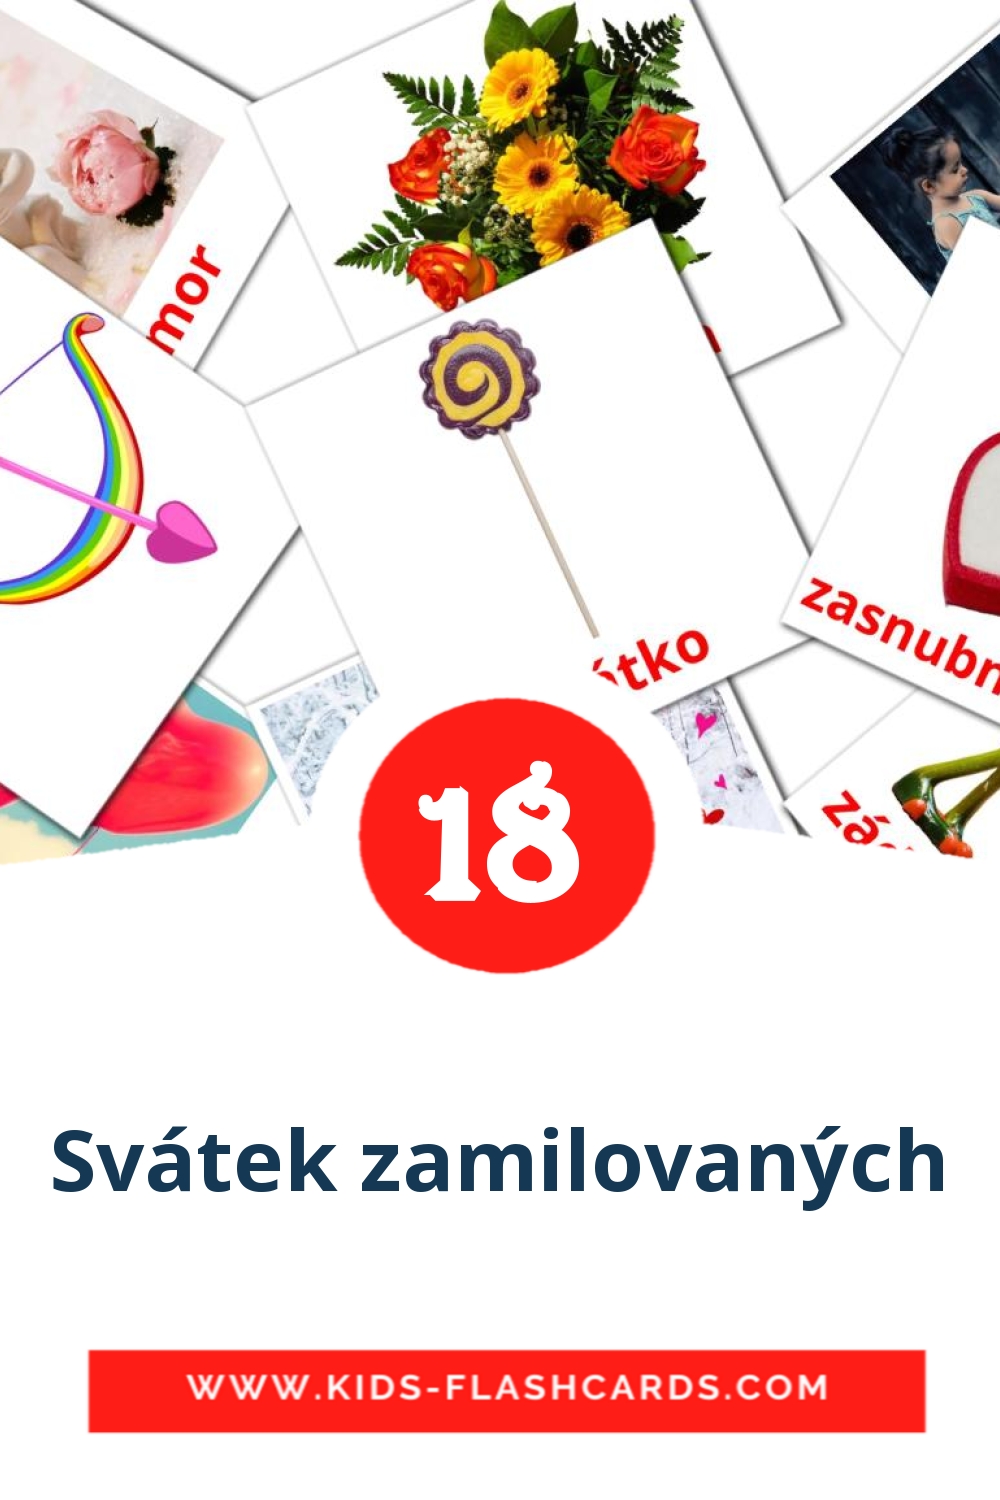 18 tarjetas didacticas de Svátek zamilovaných para el jardín de infancia en checo